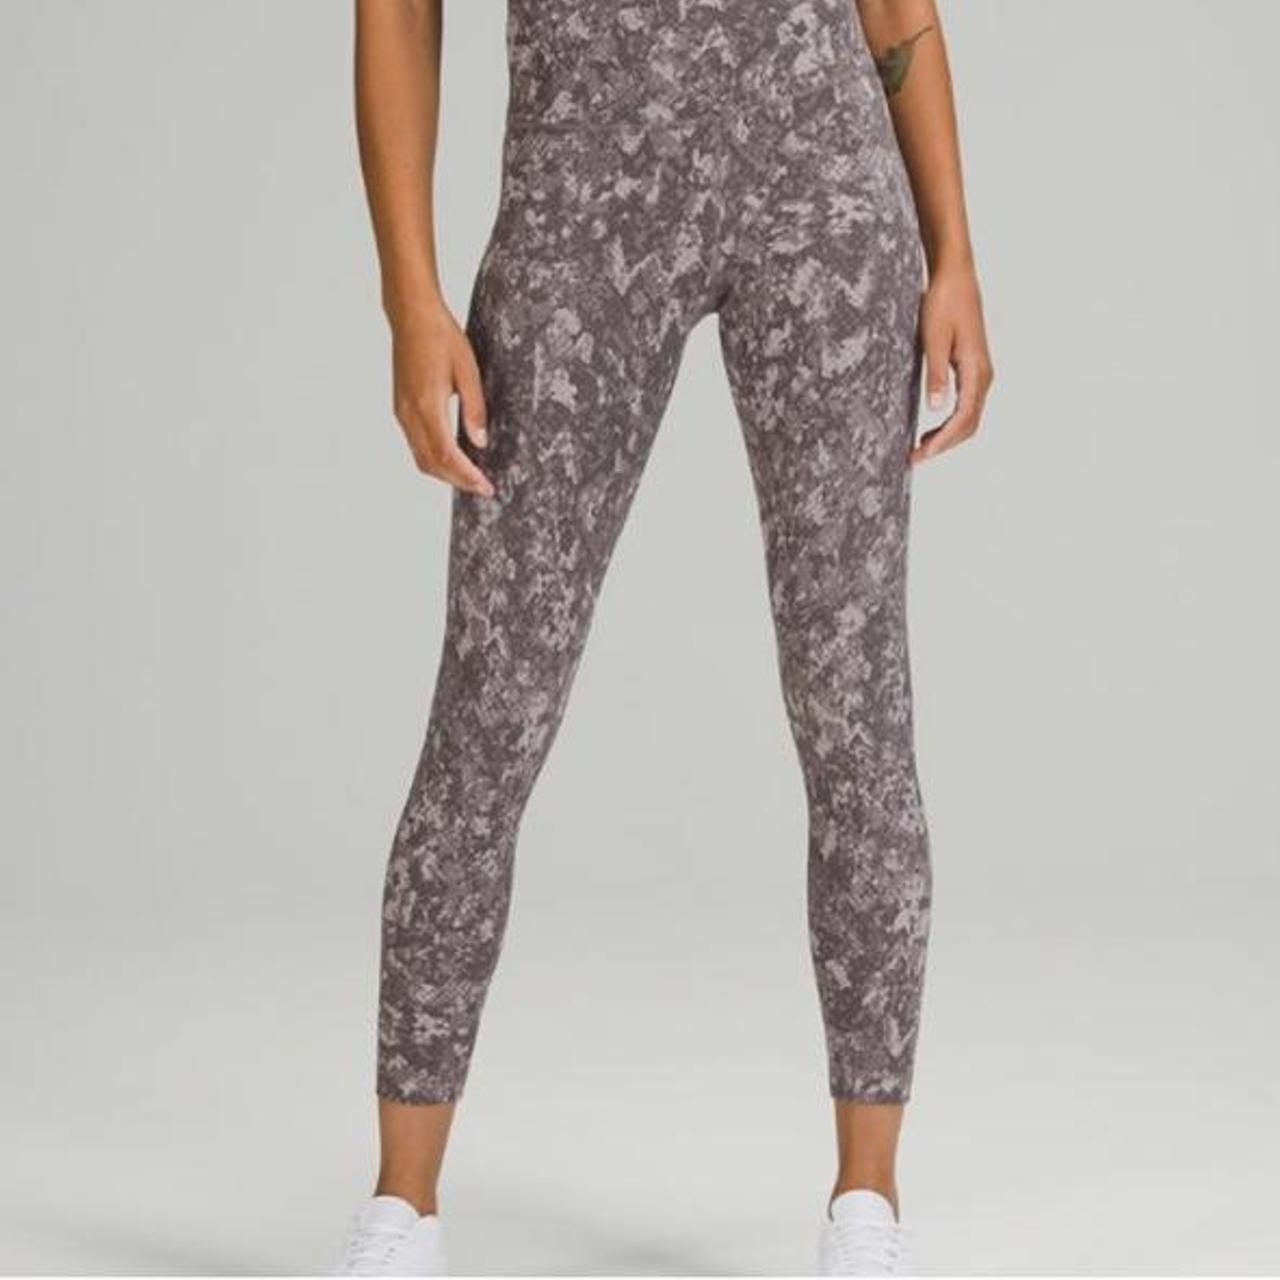 NWOT lululemon align floral print leggings Size: 4 • - Depop